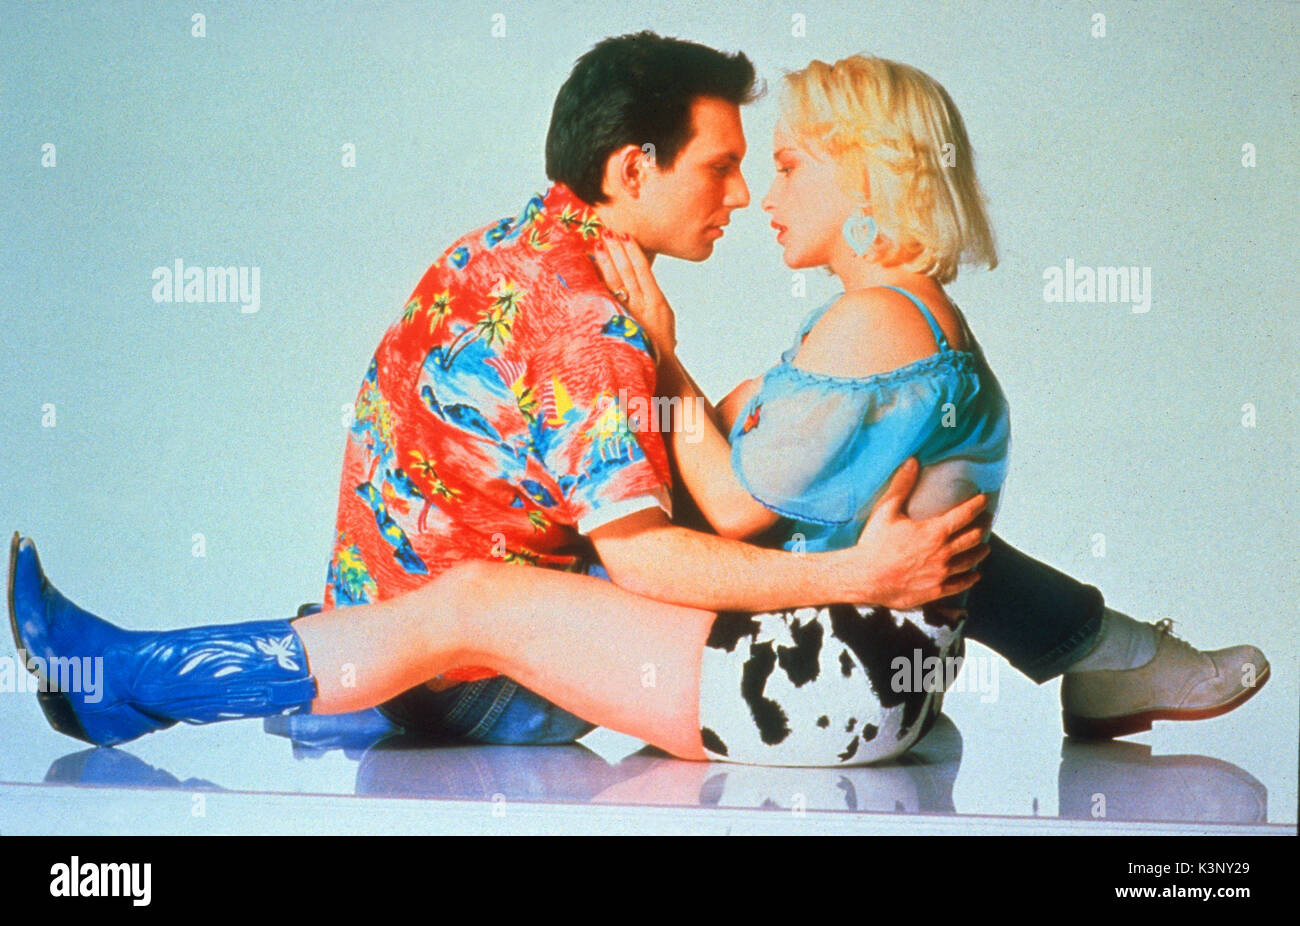 Romanticismo [US 1993] Brad Pitt, MICHAEL RAPPAPORT, Christian Slater, Patricia Arquette data: 1993 Foto Stock